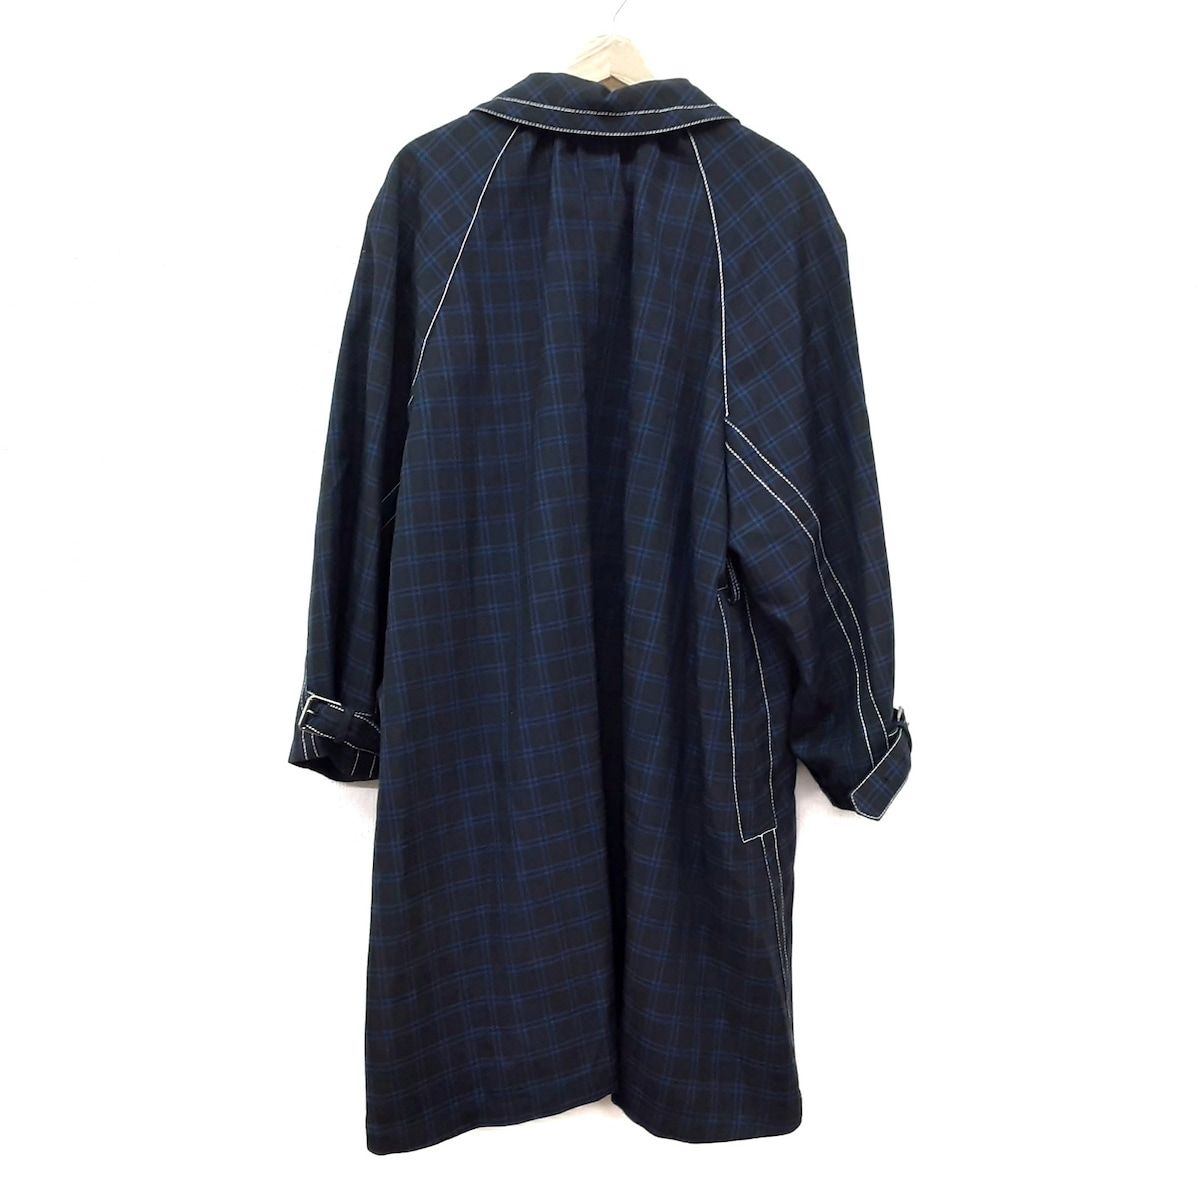 MARNI(マルニ) コート サイズ38 S レディース美品 - 黒×ネイビー 長袖